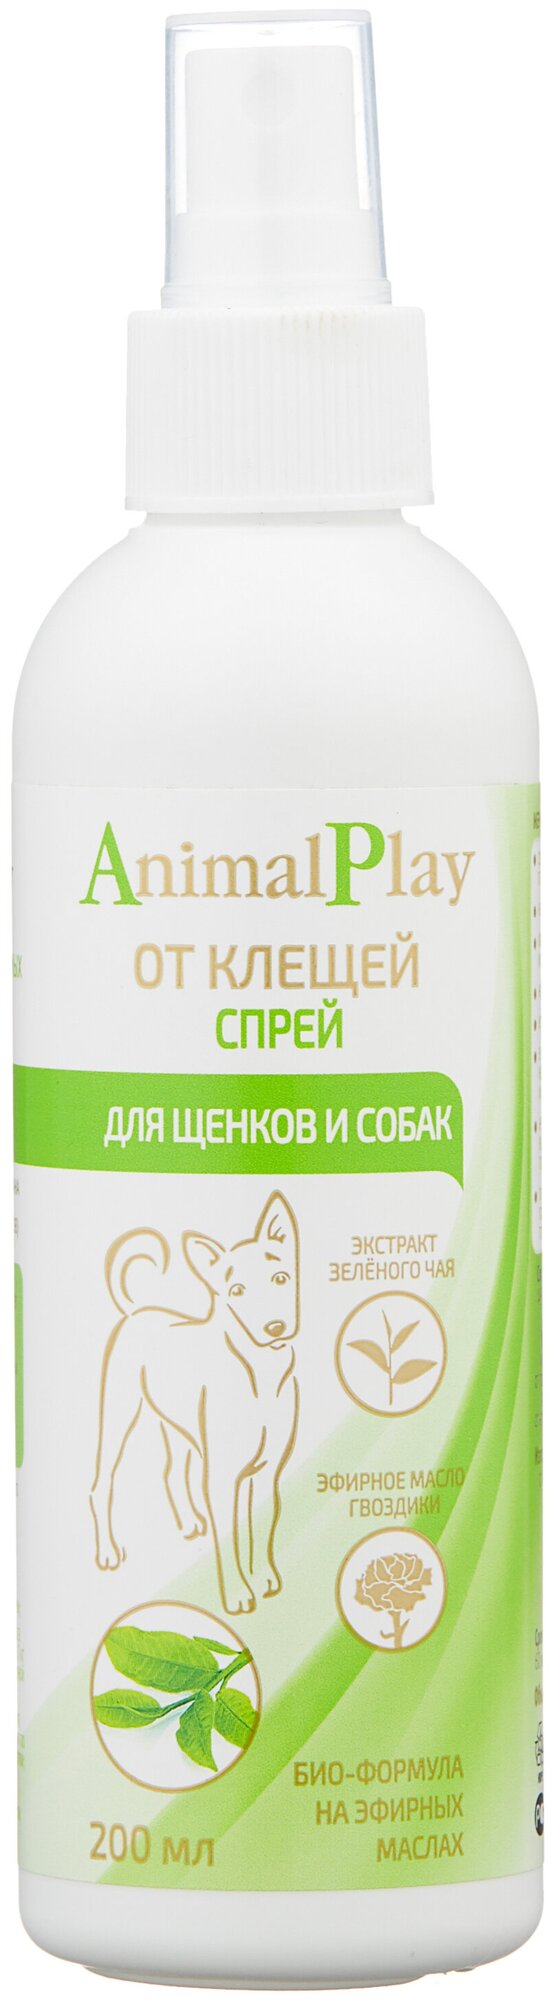 Animal Play спрей от блох и клещей репеллентный для домашних животных